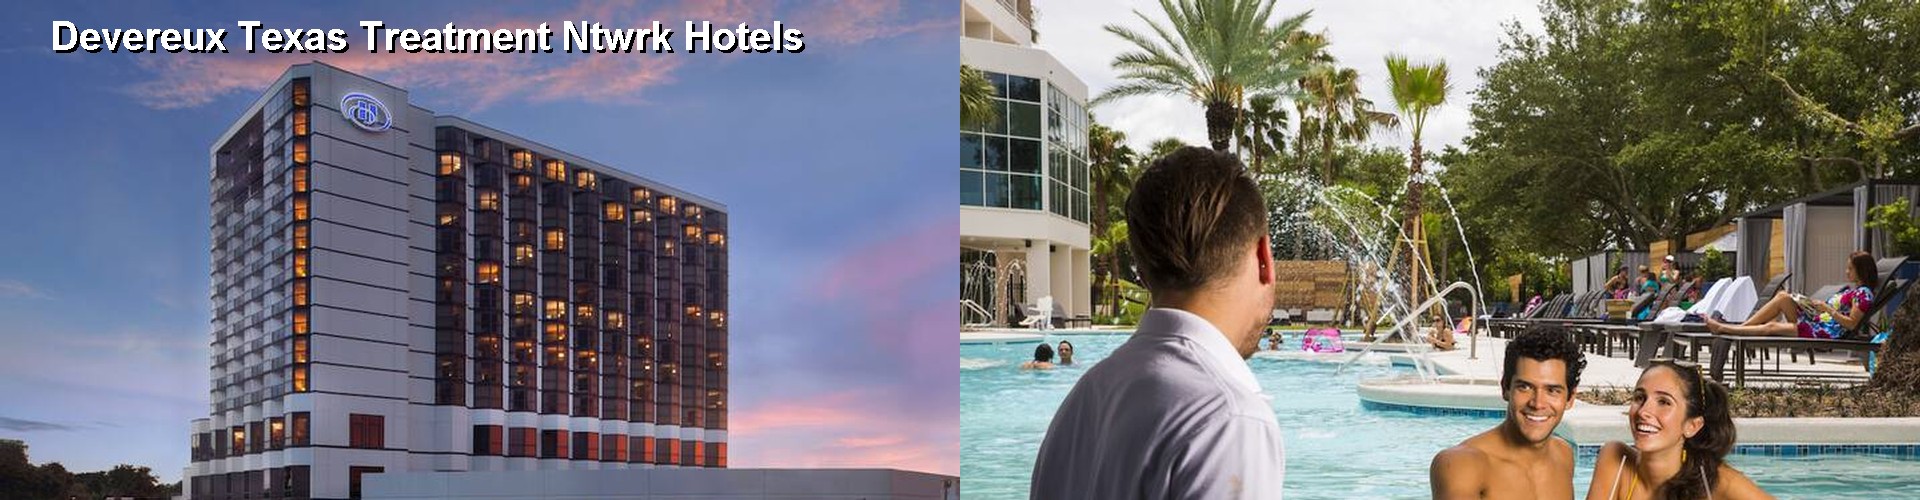 5 Best Hotels near Devereux Texas Treatment Ntwrk